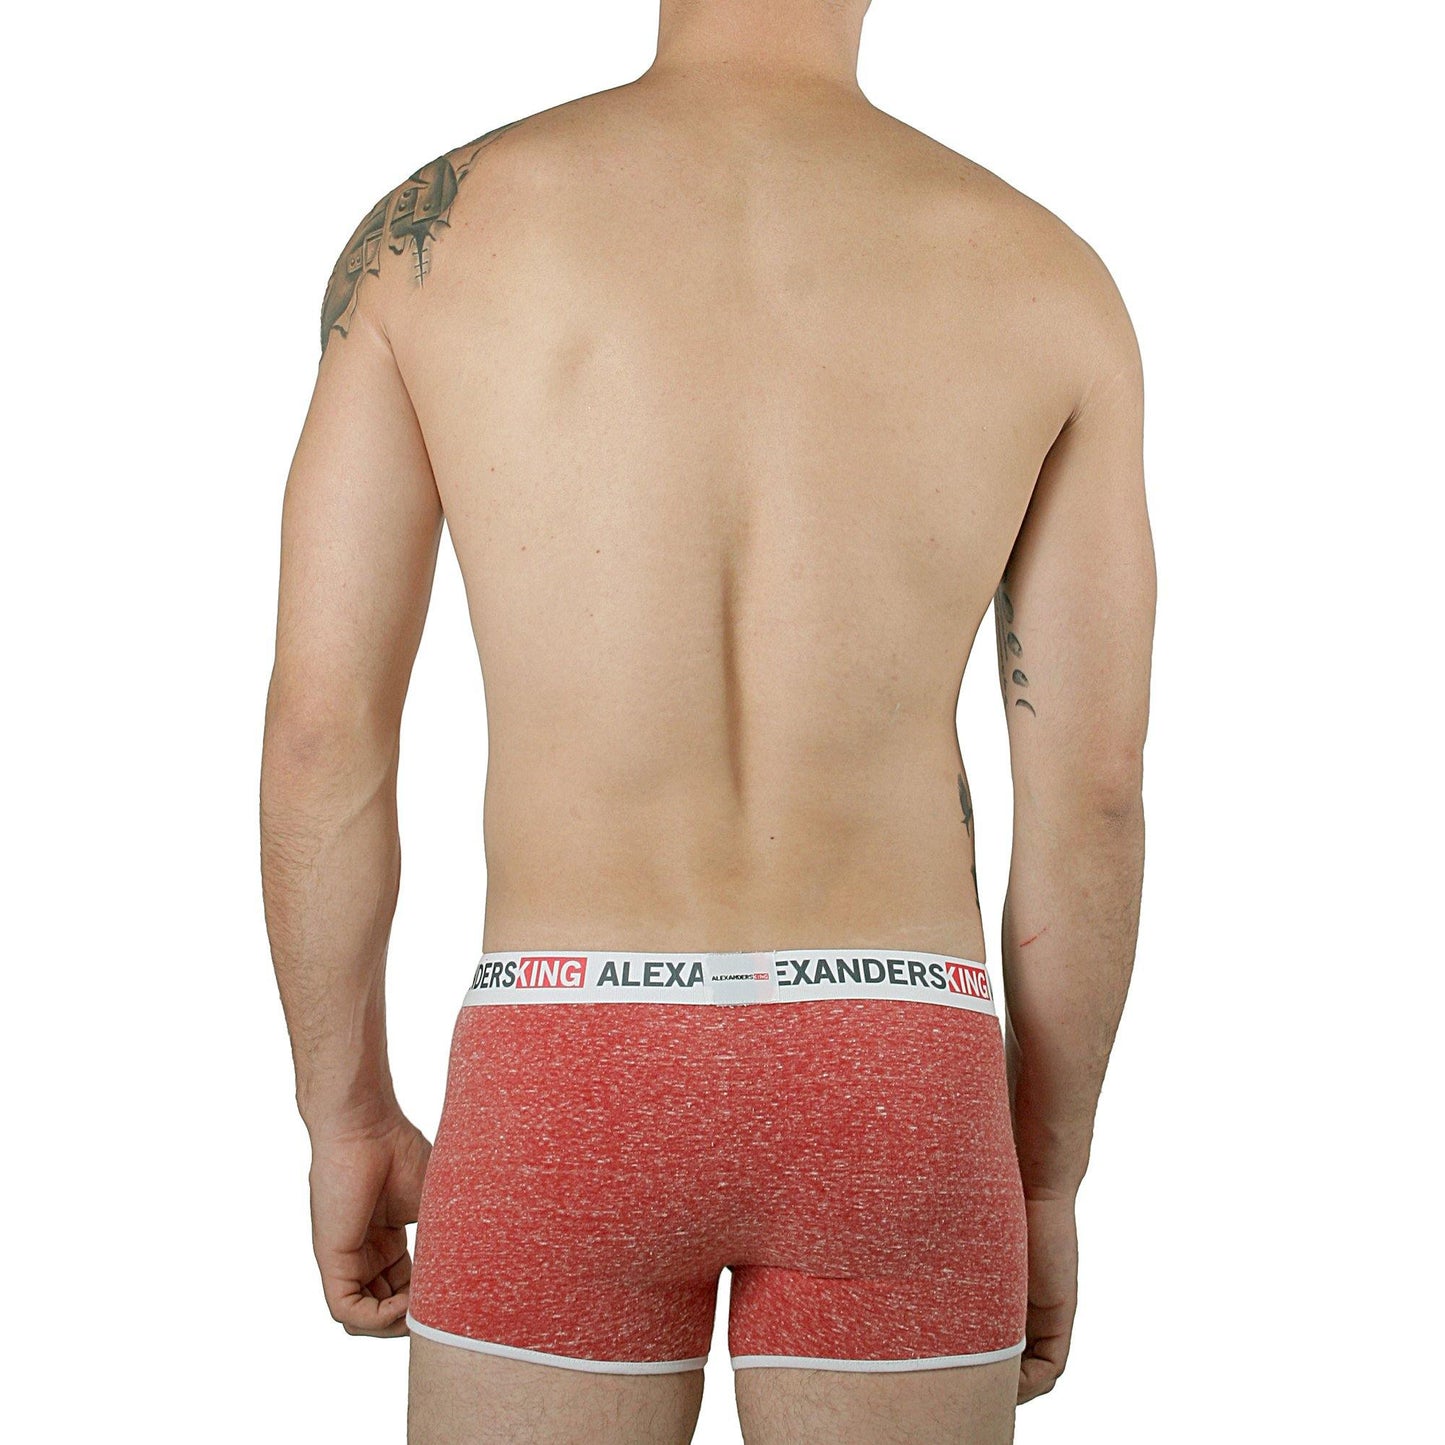 BP0007 - BÌ?xer Prime Soothing Comfort - AlexandersKing Underwear